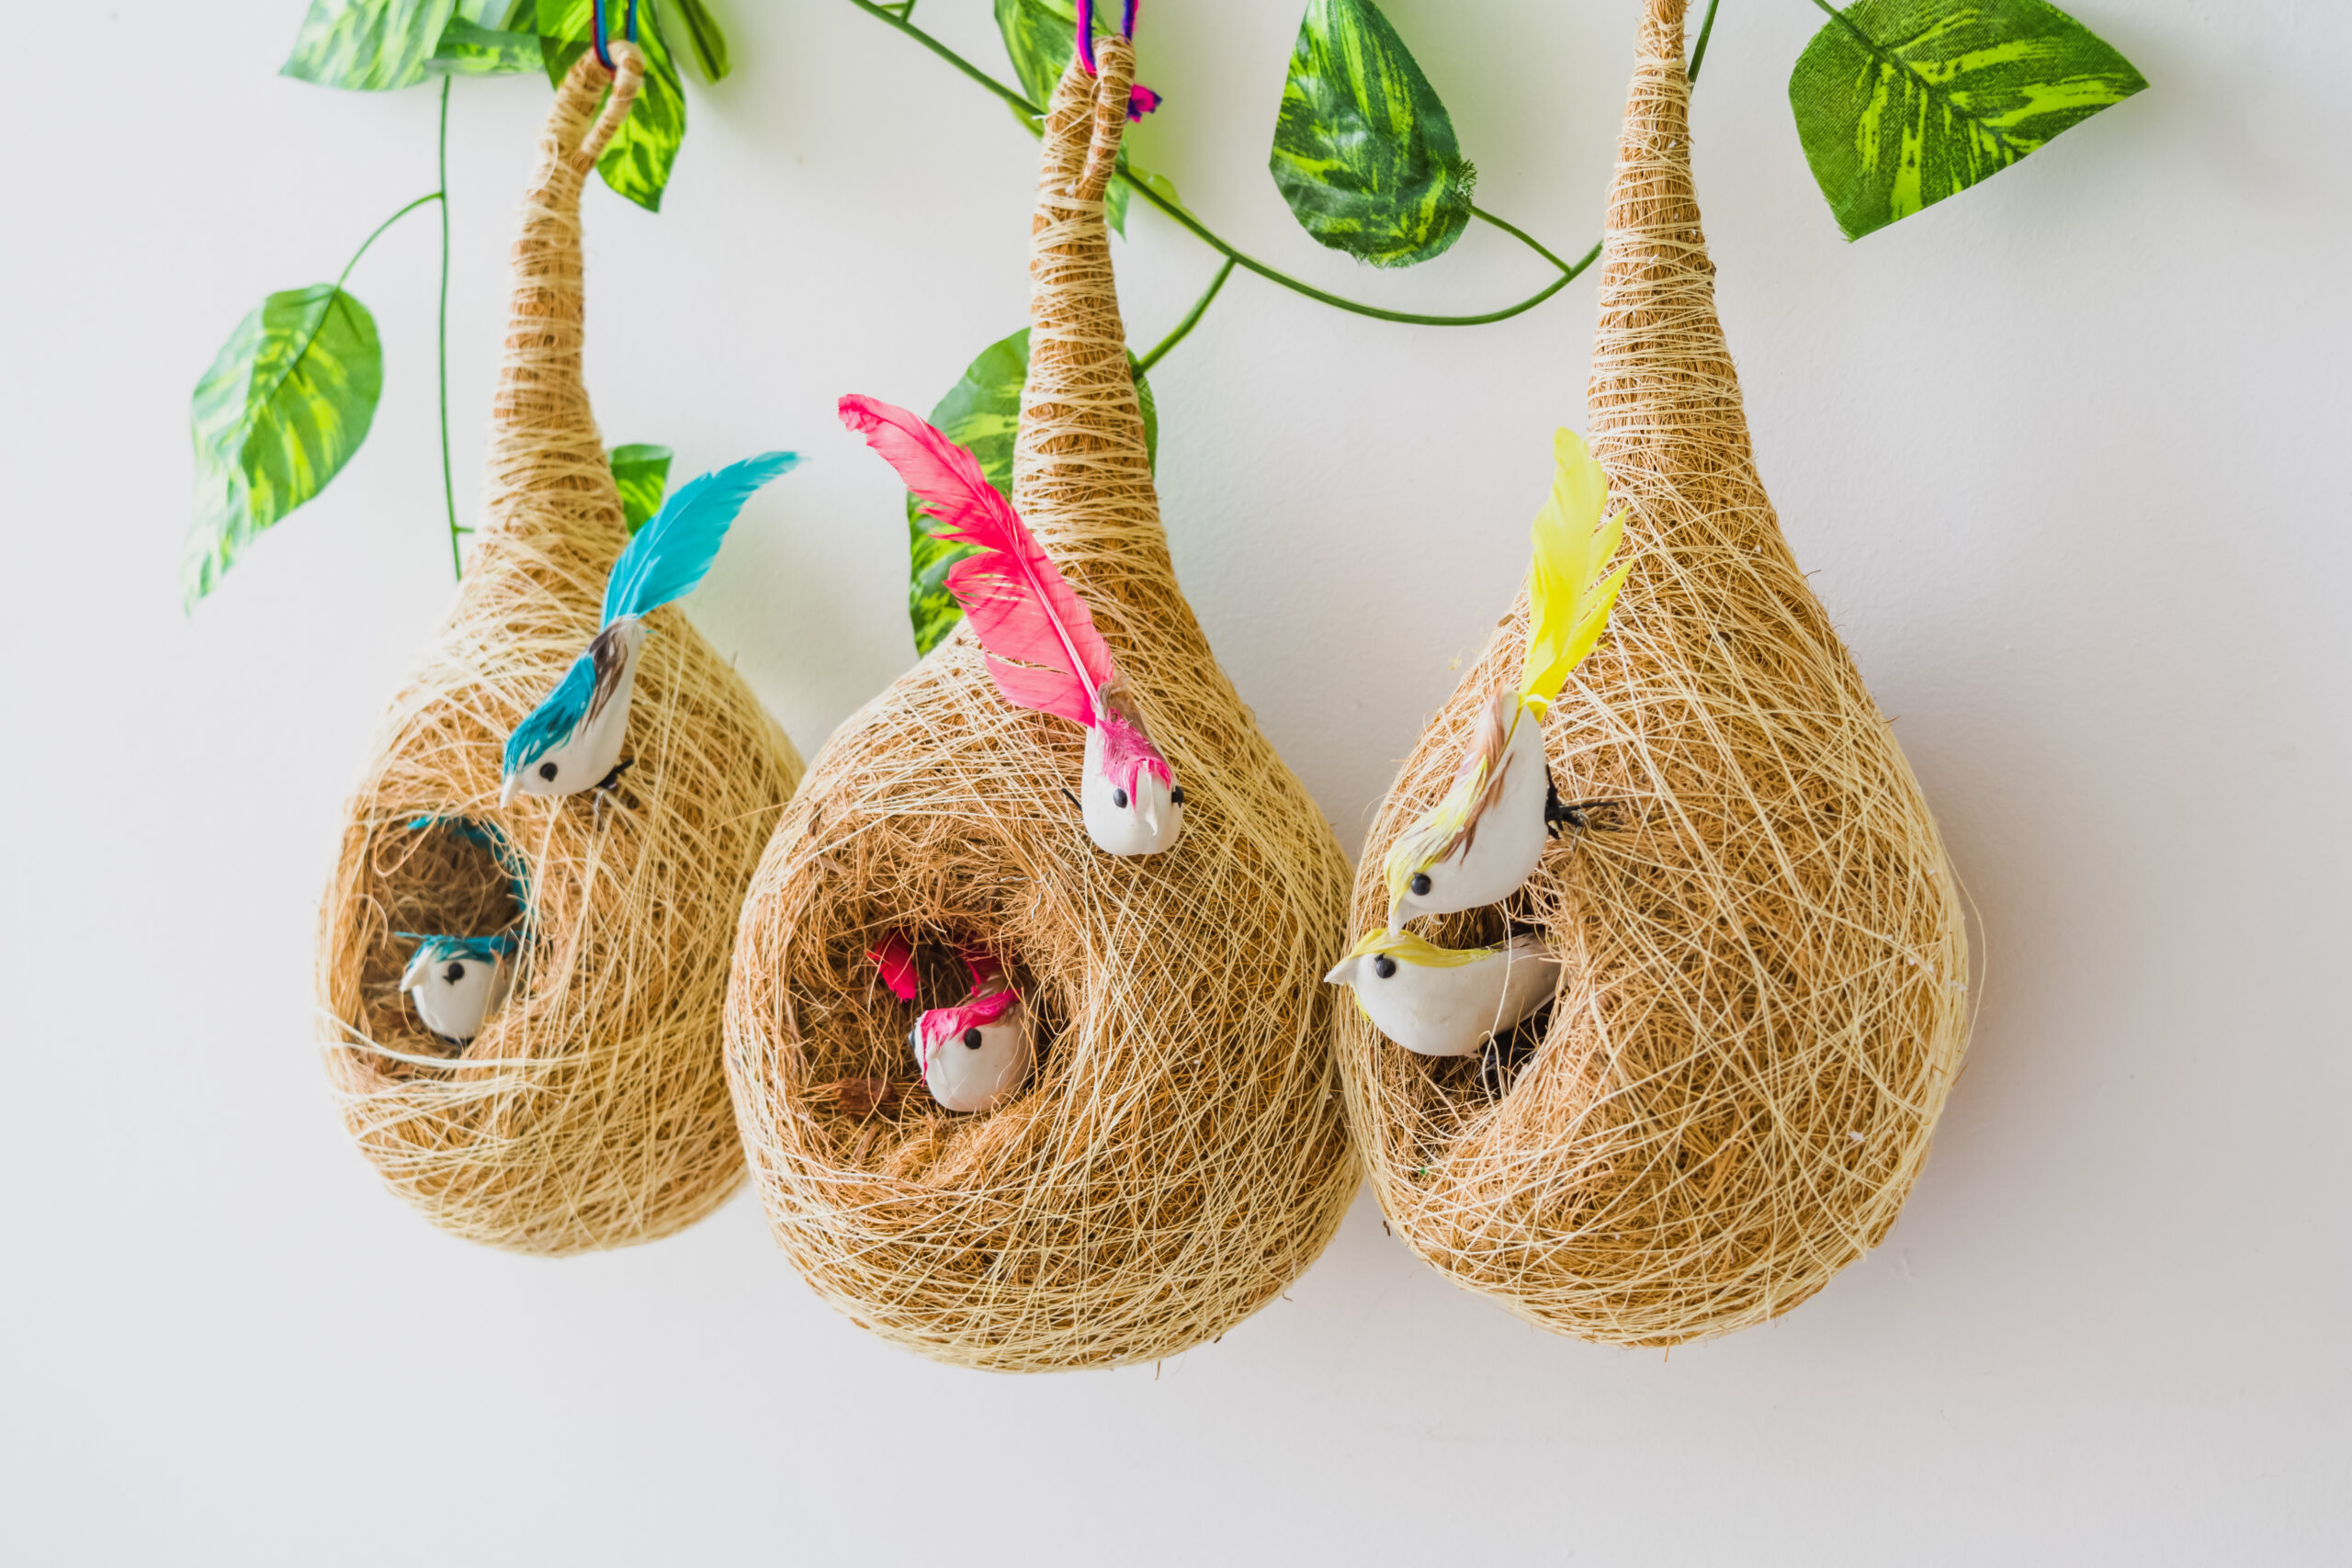 Webelkat Designer Premium Hanging Coir Bird Nest for Small Birds Balco